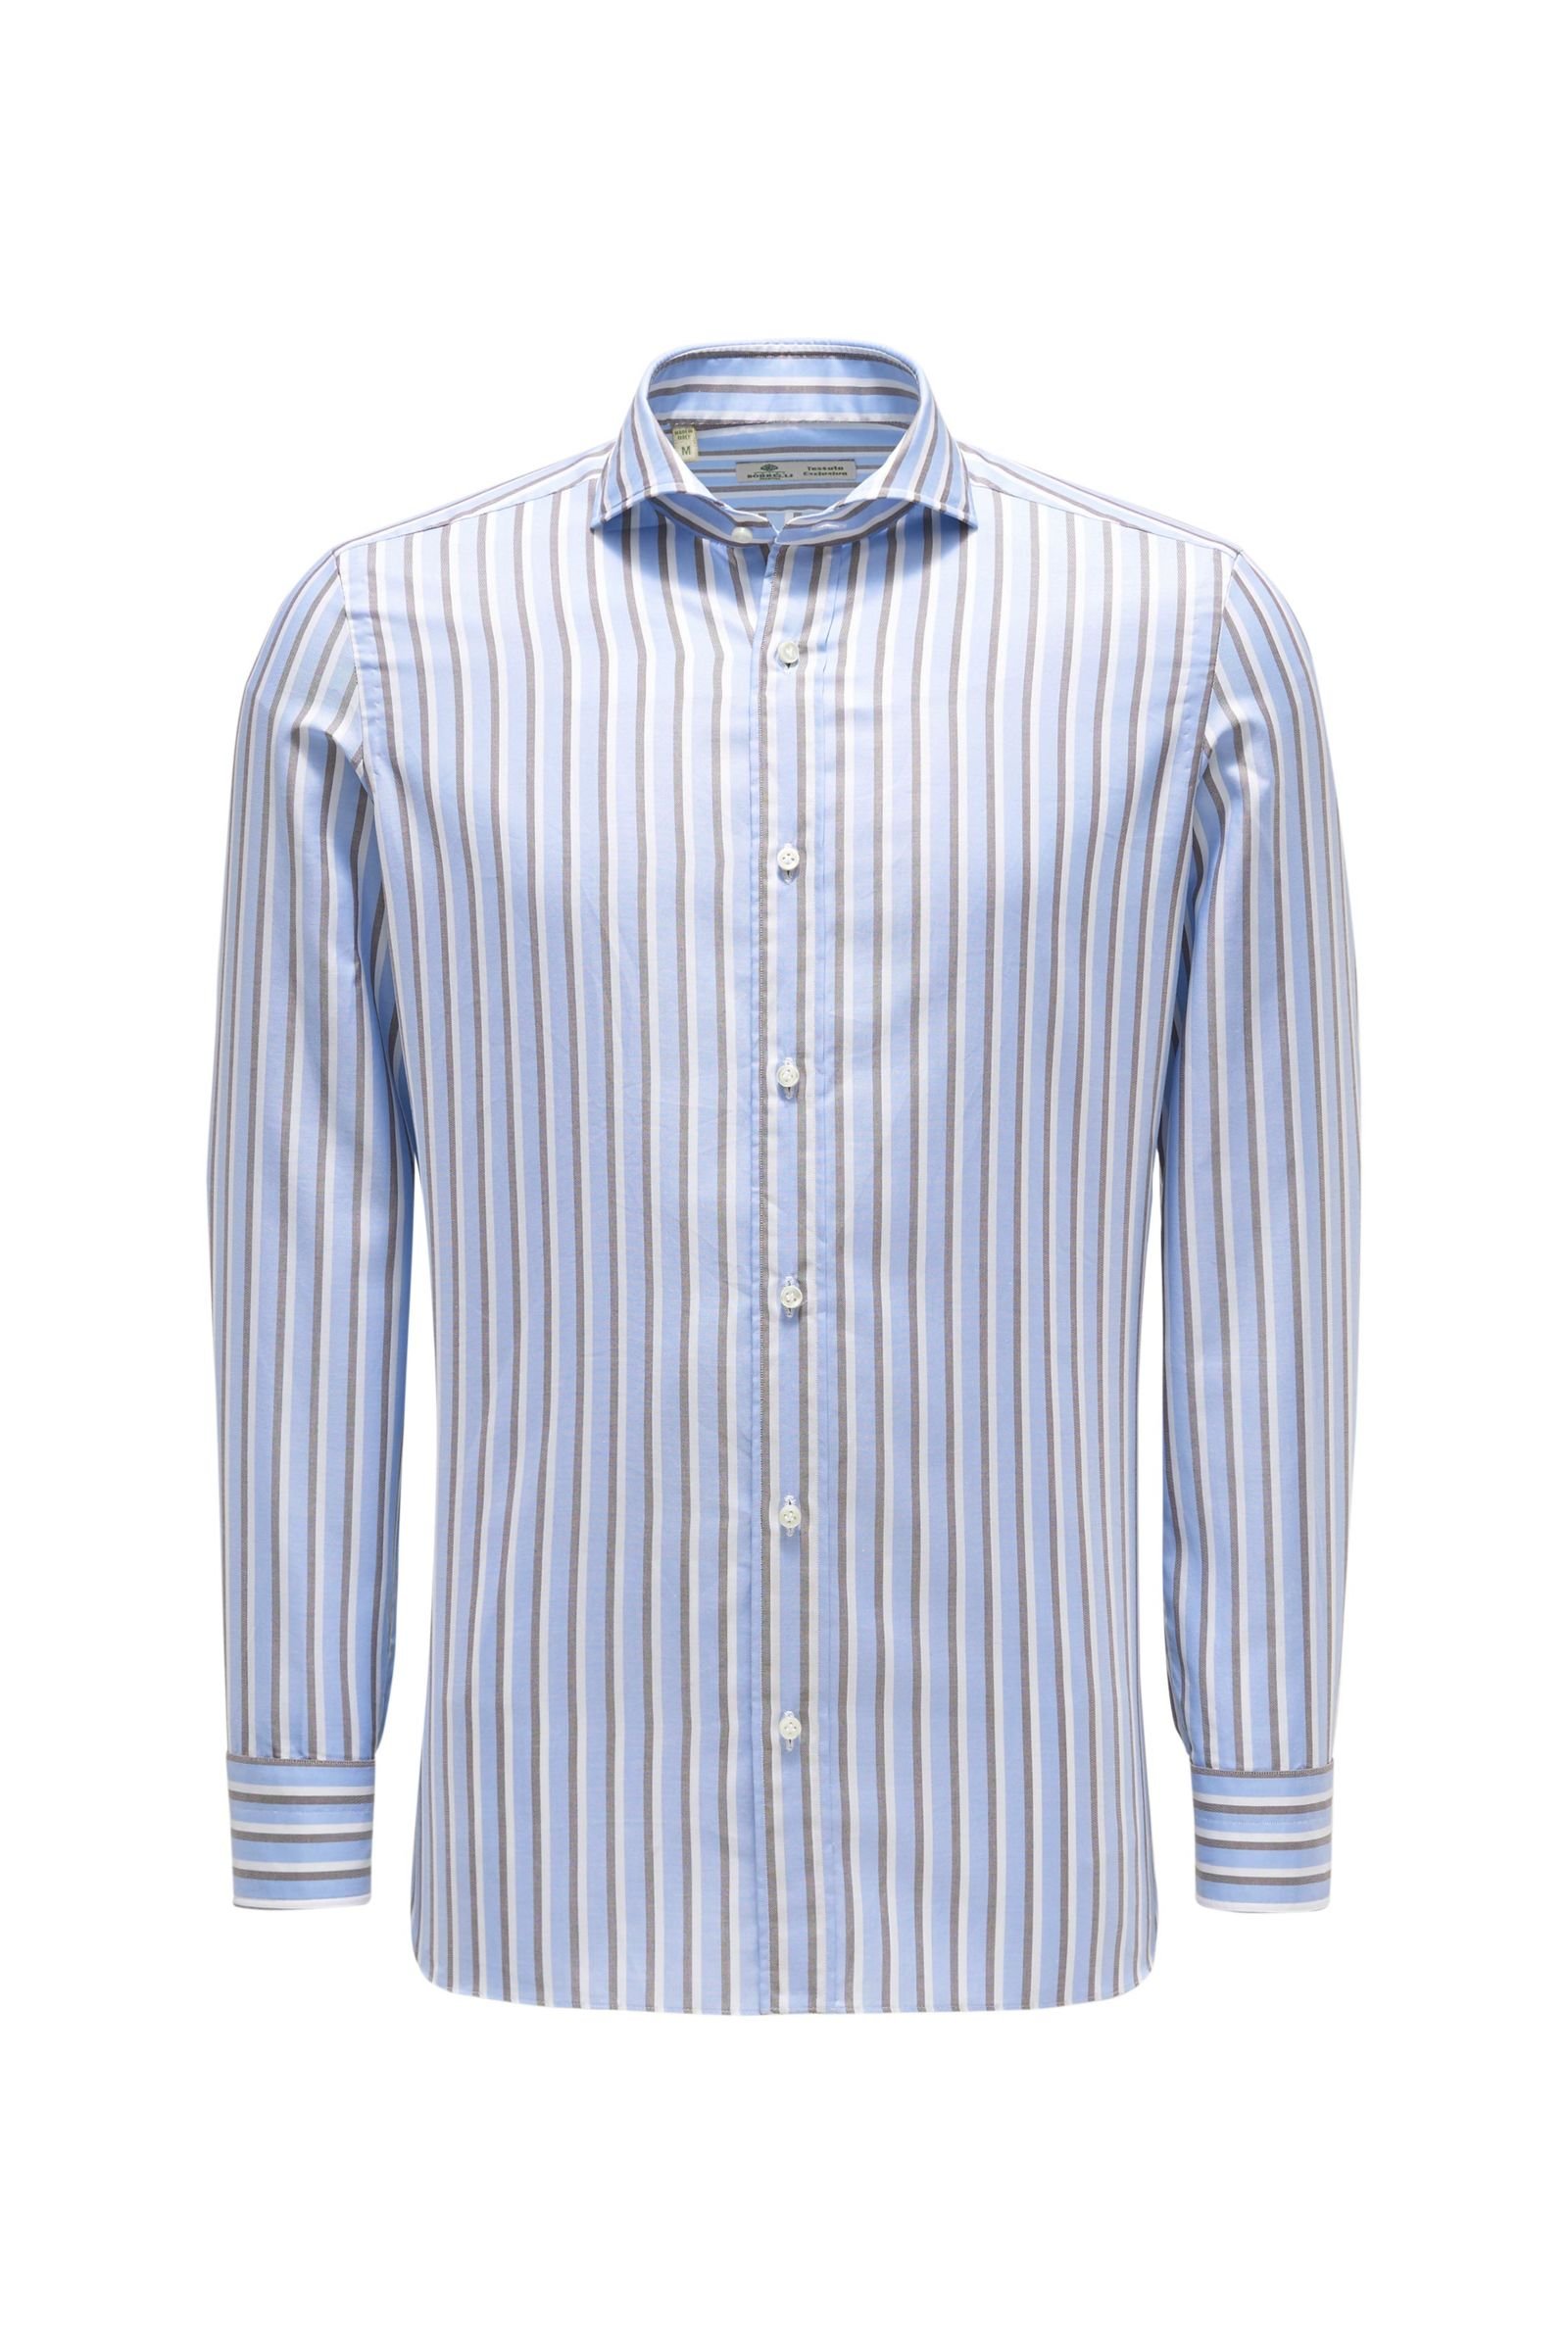 Oxford shirt shark collar light blue/grey-brown striped